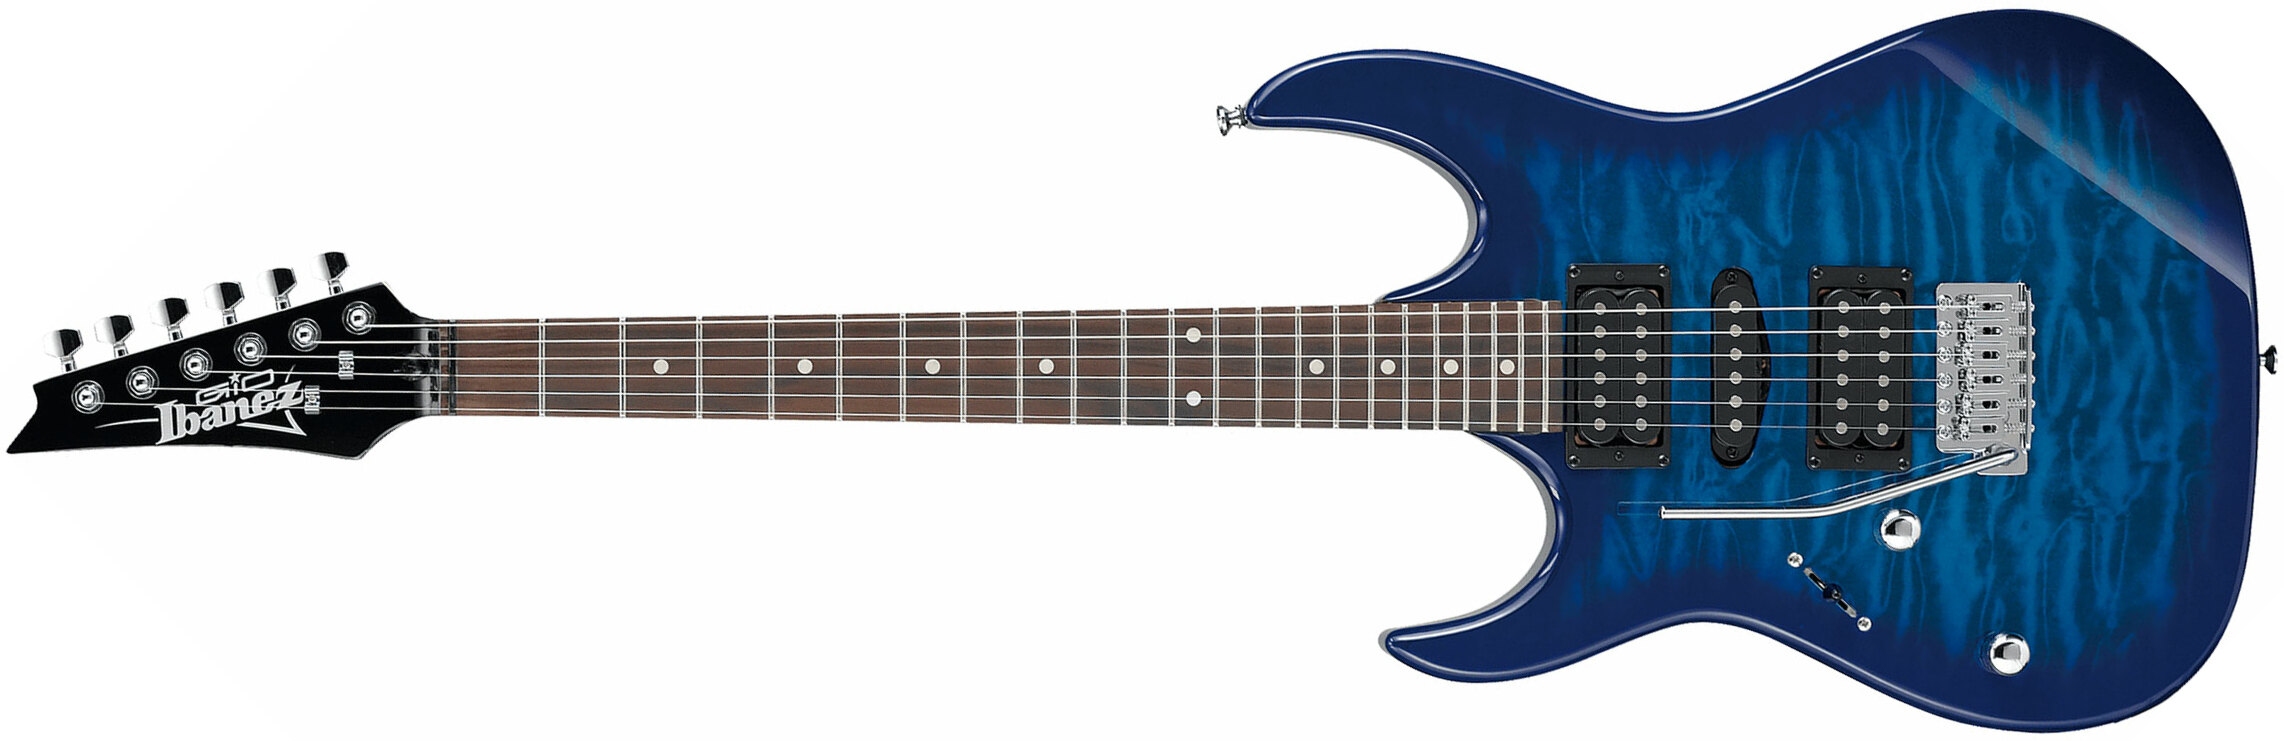 Ibanez Grx70qal Tbb Lh Gaucher Gio Hsh Trem Jat - Transparent Blue Burst - E-Gitarre für Linkshänder - Main picture